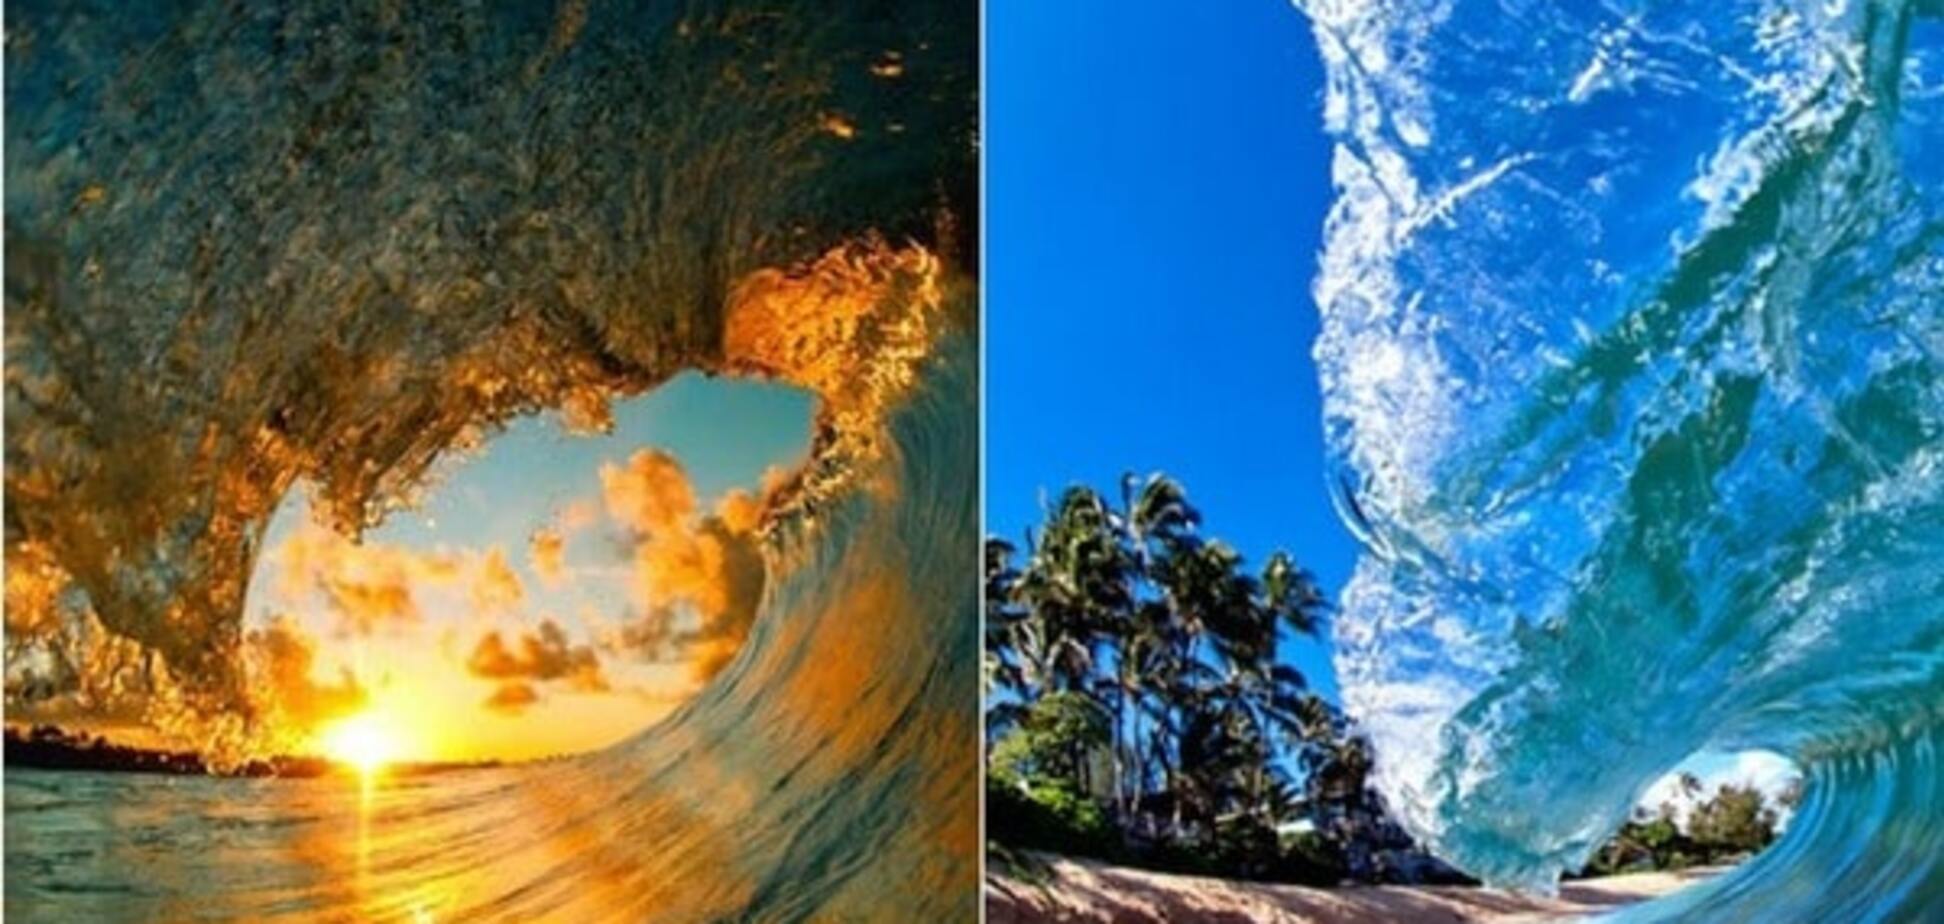 Назад в лето: 13 завораживающих фото океанских волн